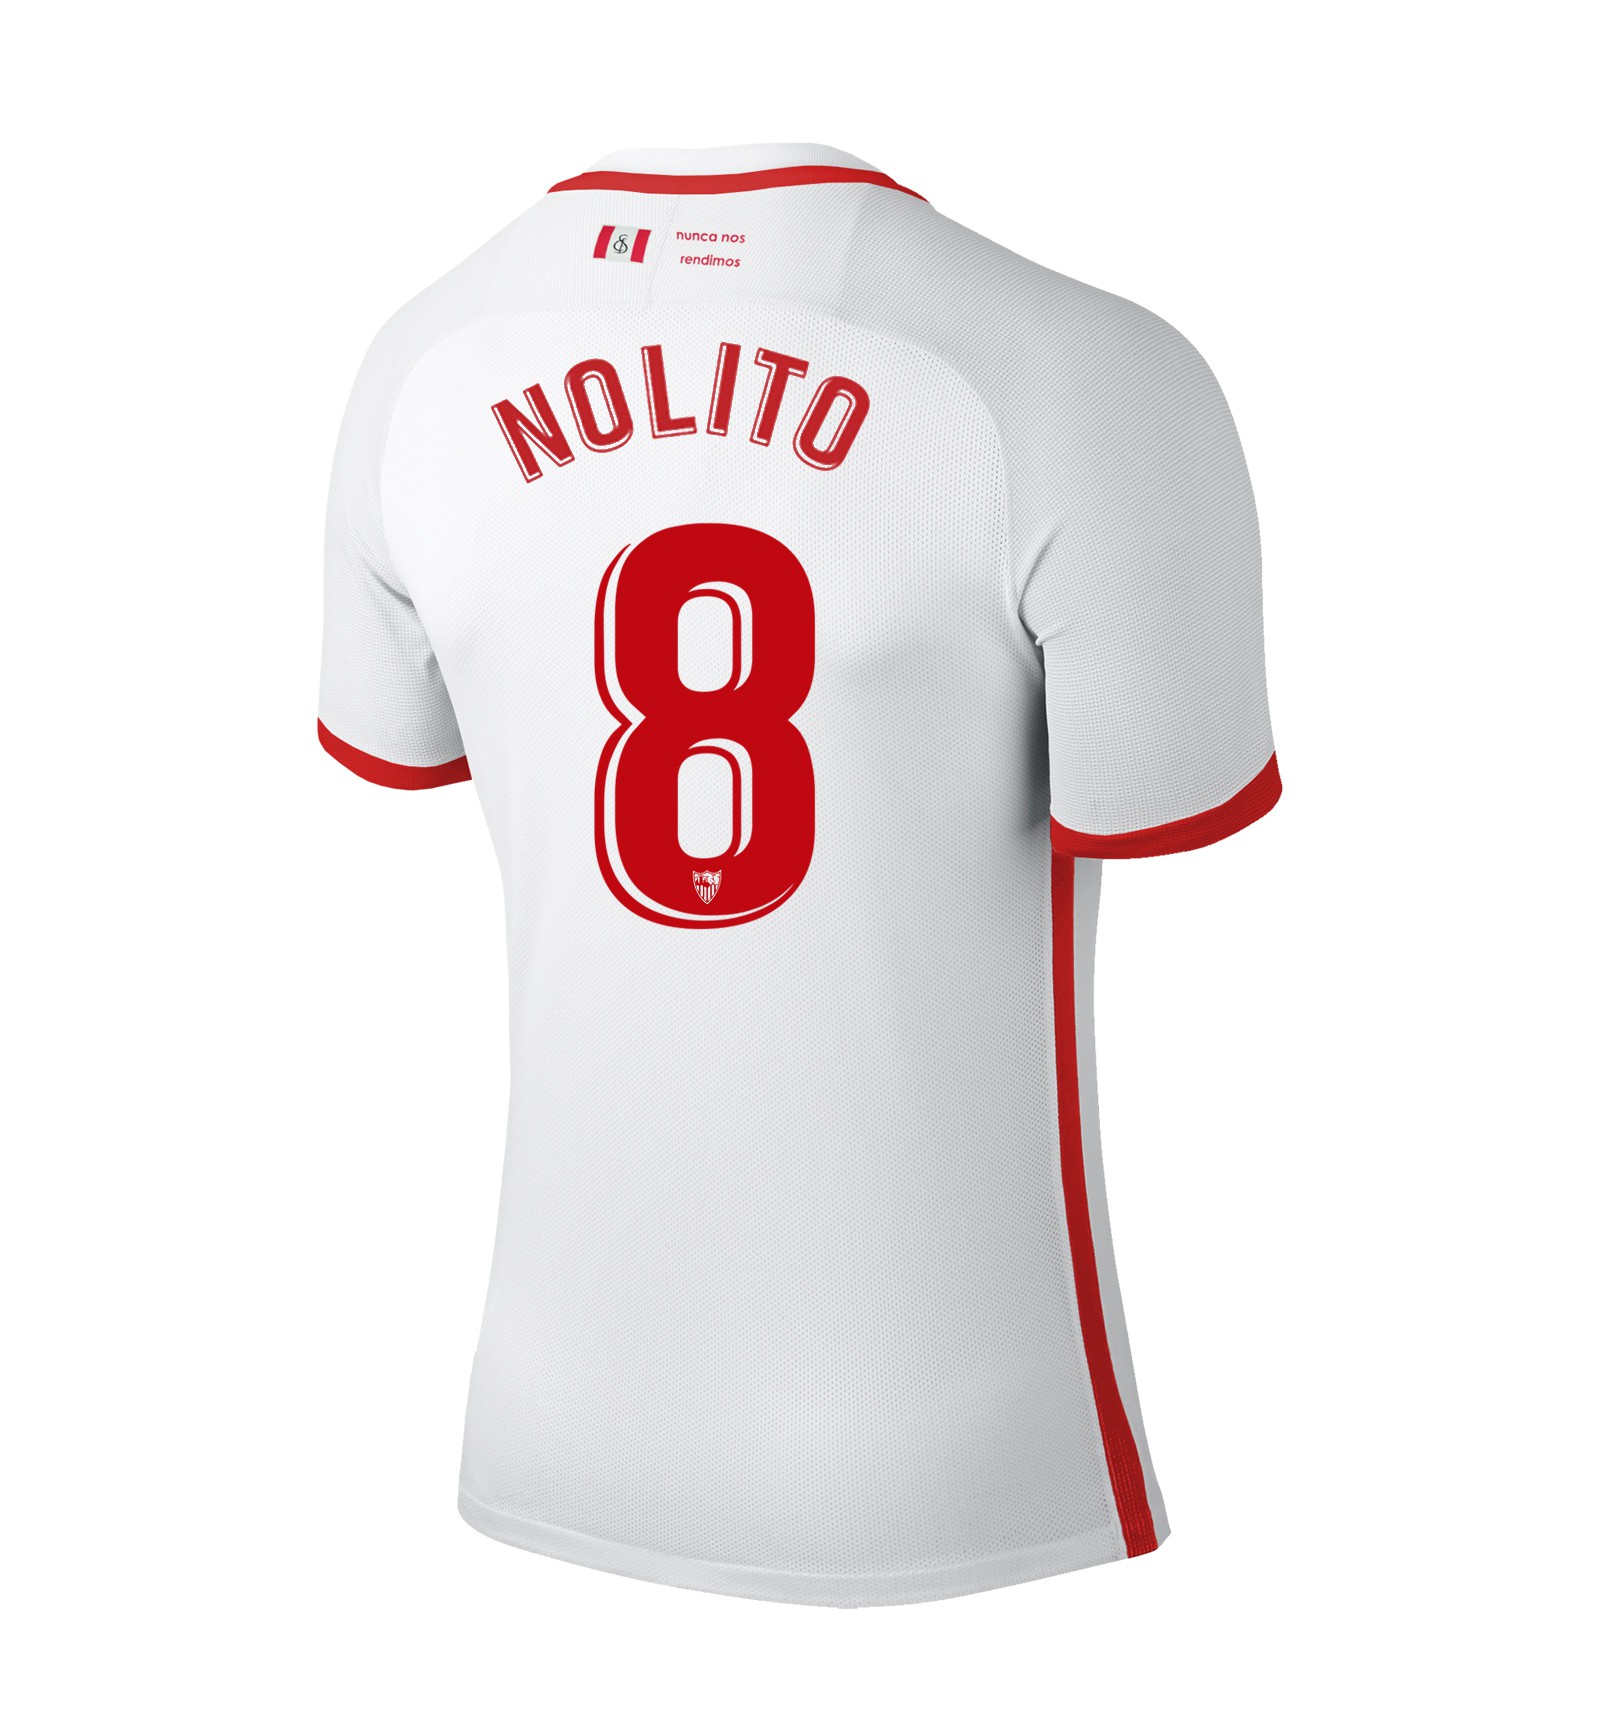 Nolito | Sevilla F.C.